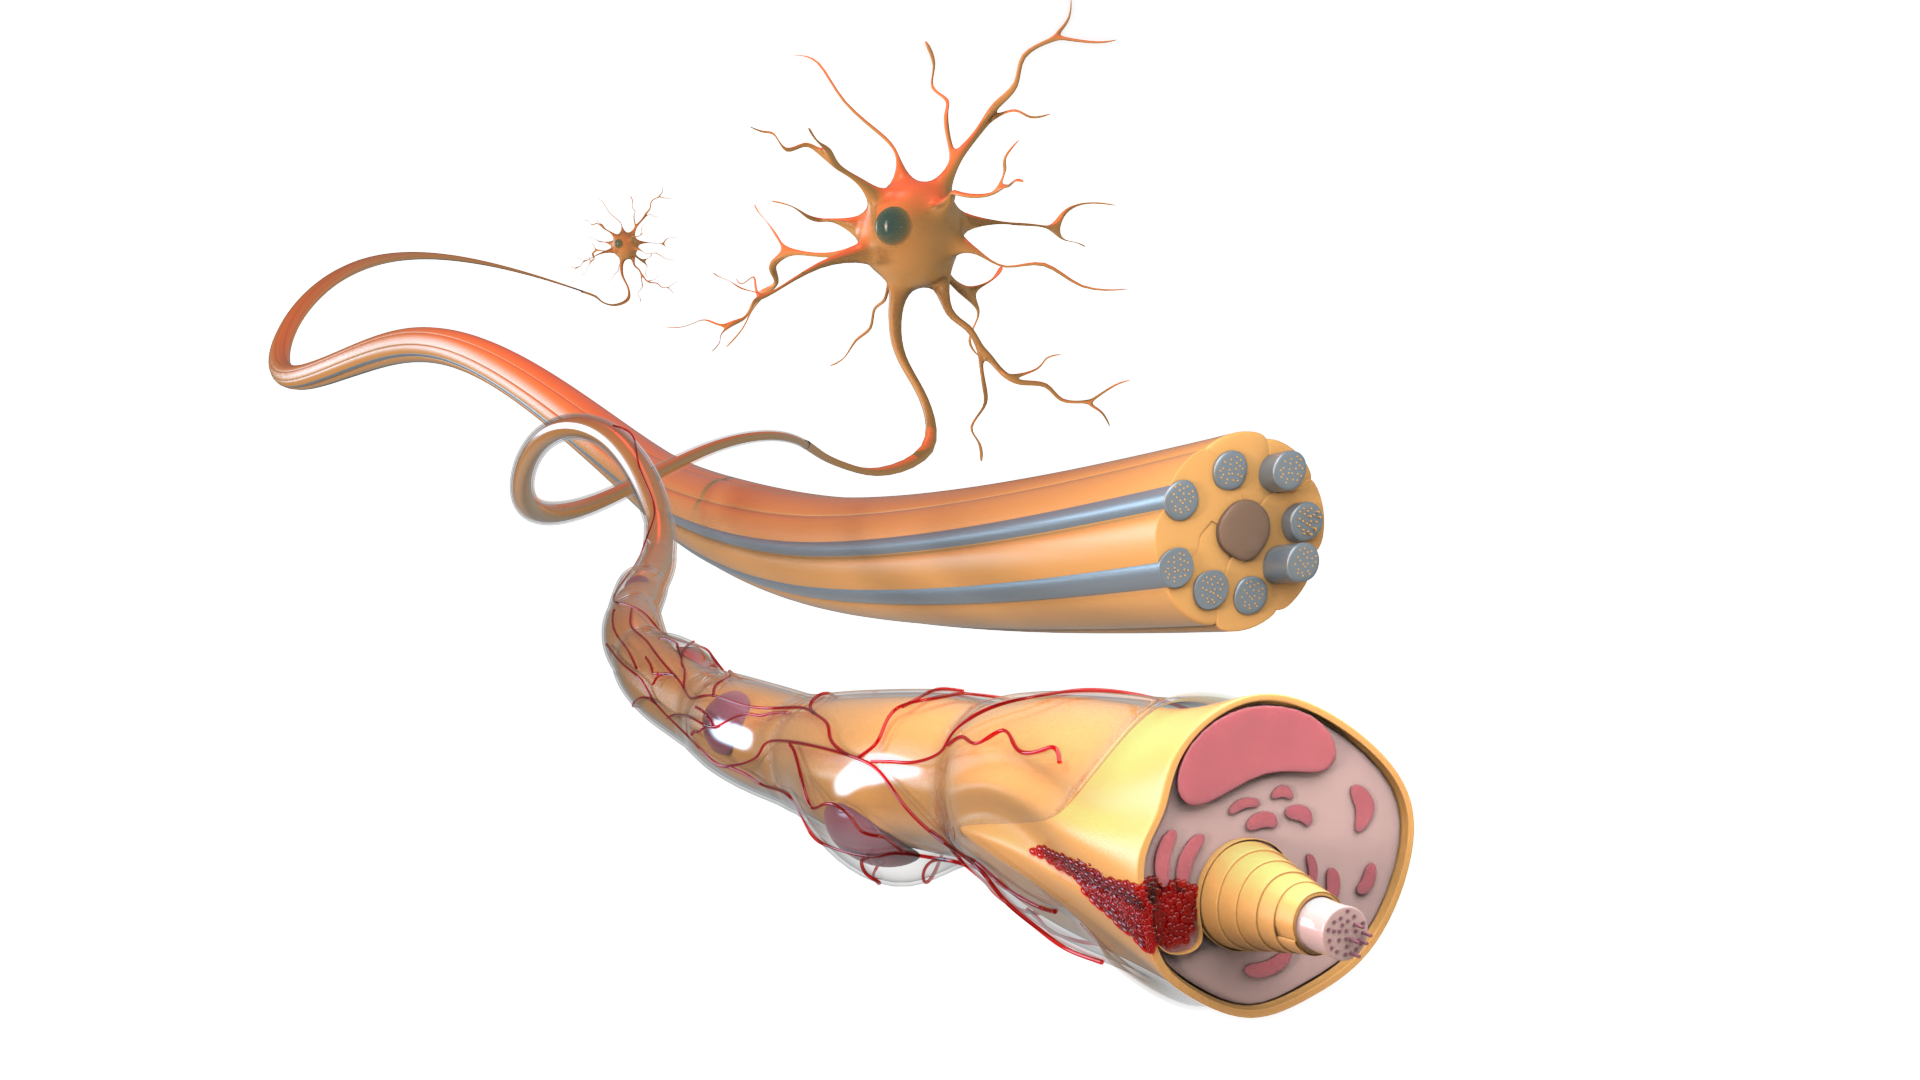 fibra nerviosa y neurona